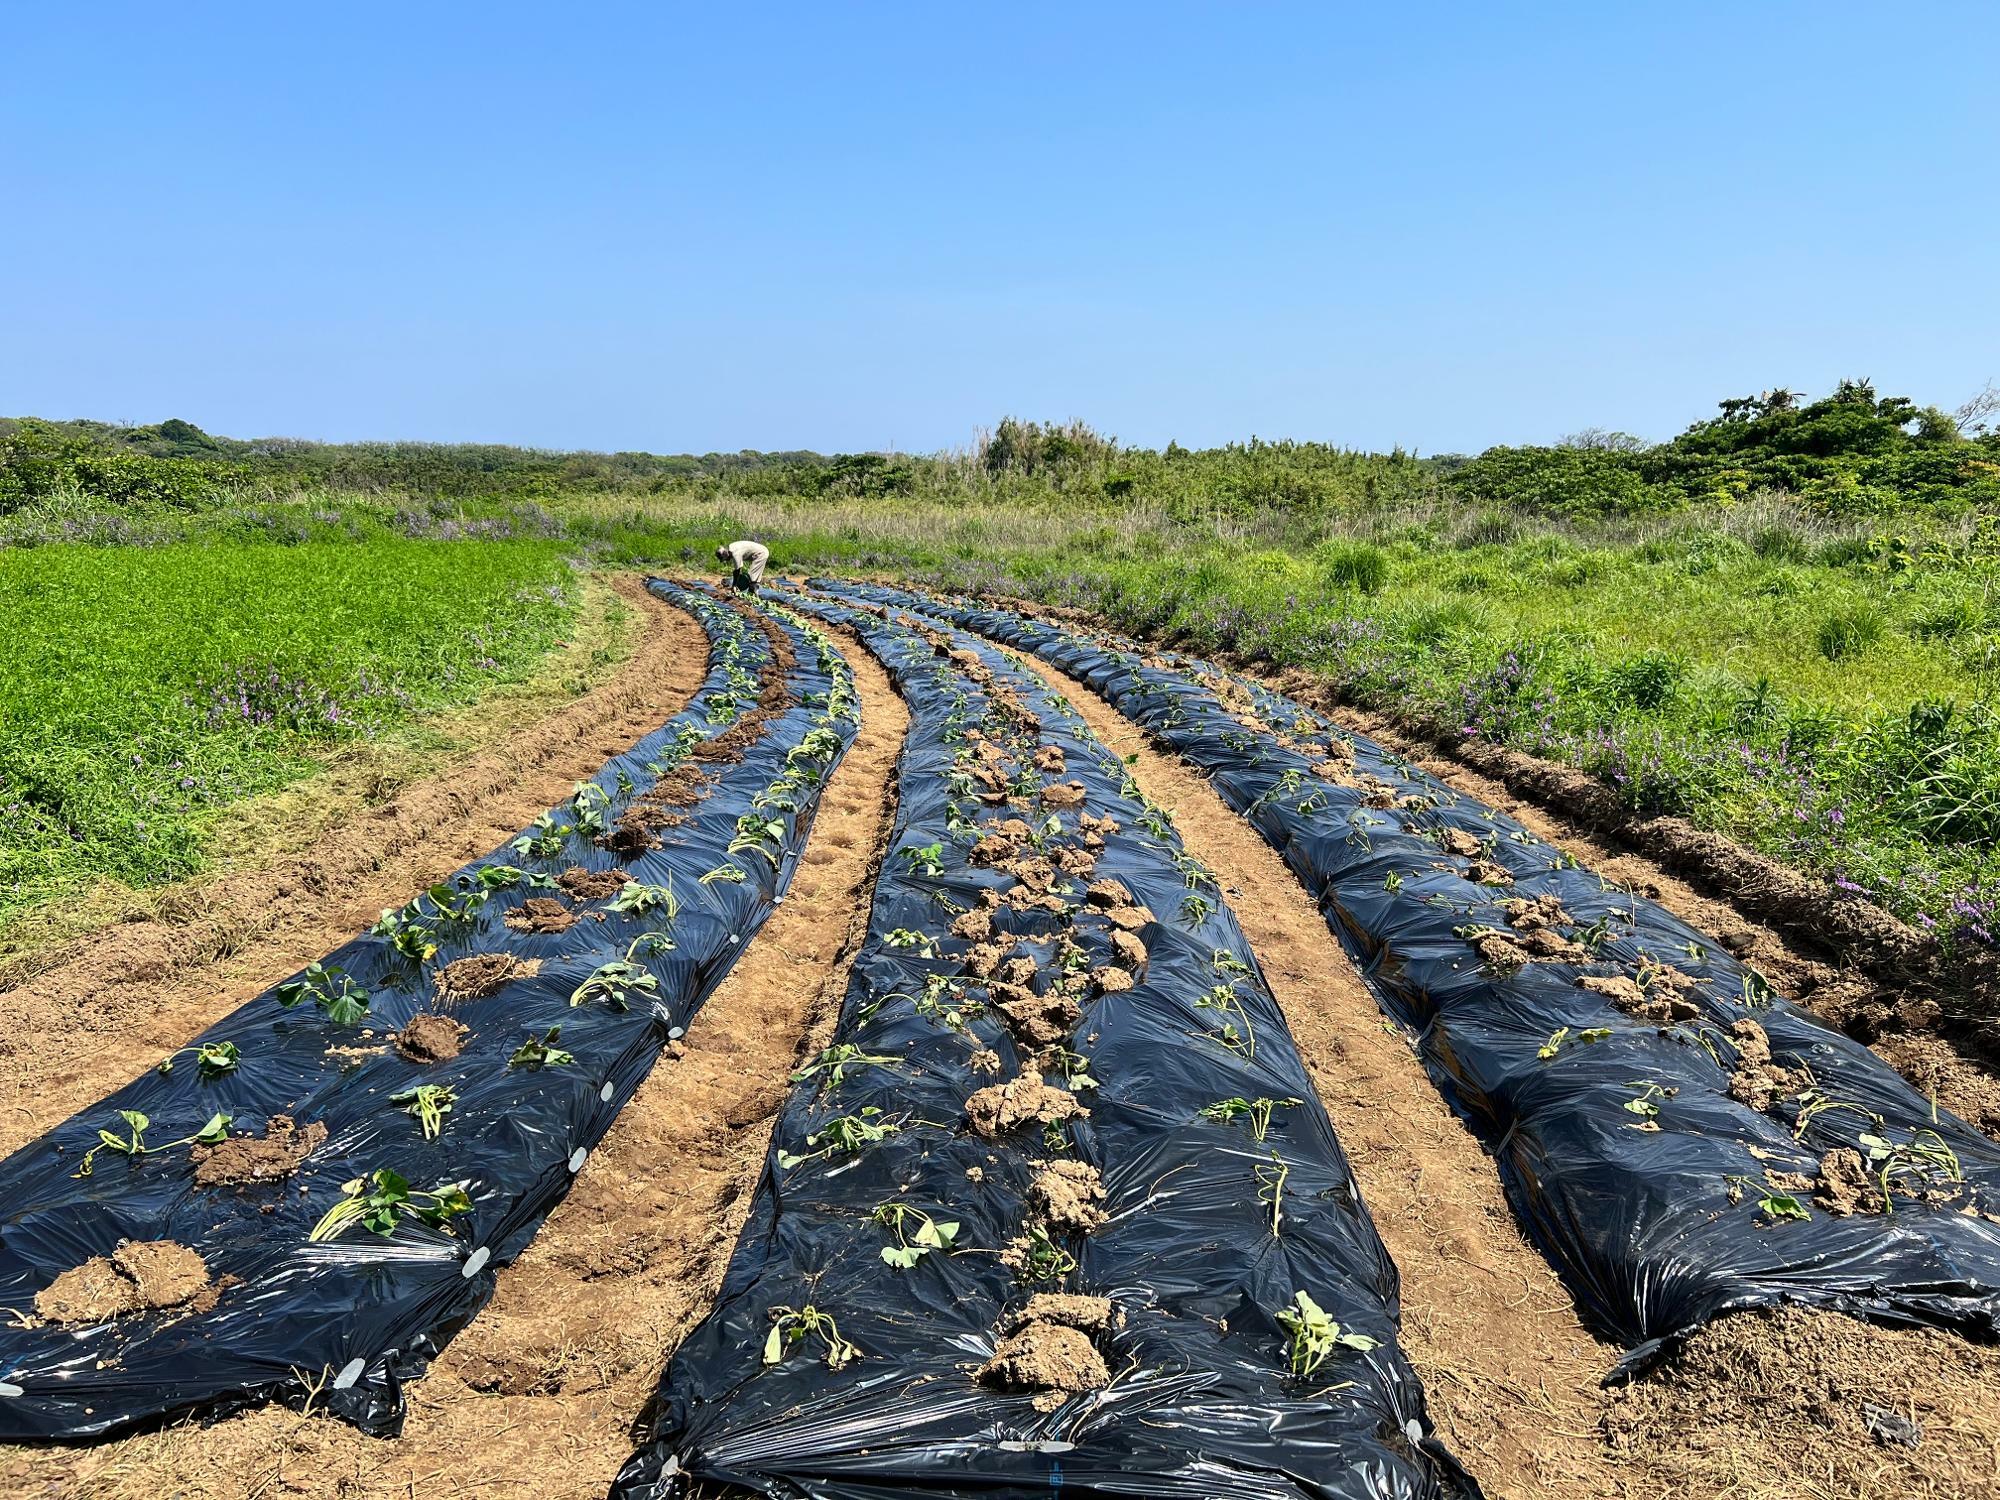 山口県萩市にある無人島の畑では、モンパチフェスに出店するための薩摩芋や馬鈴薯を植えている